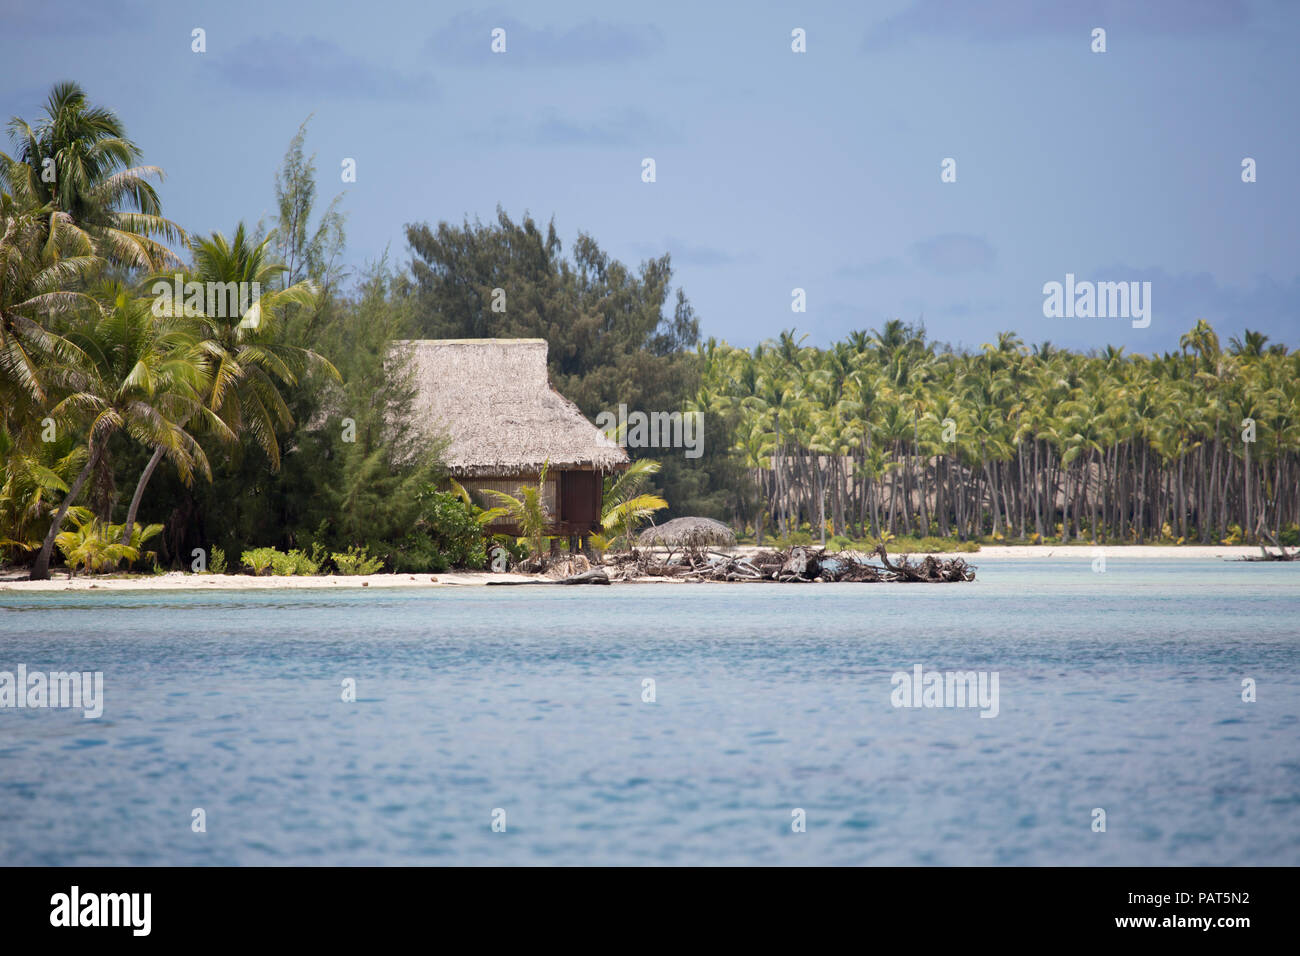 Polinesia francese, Società, Bora Bora. Scenic paesaggi acquatici con bungalow e nei dintorni di palme. Foto Stock